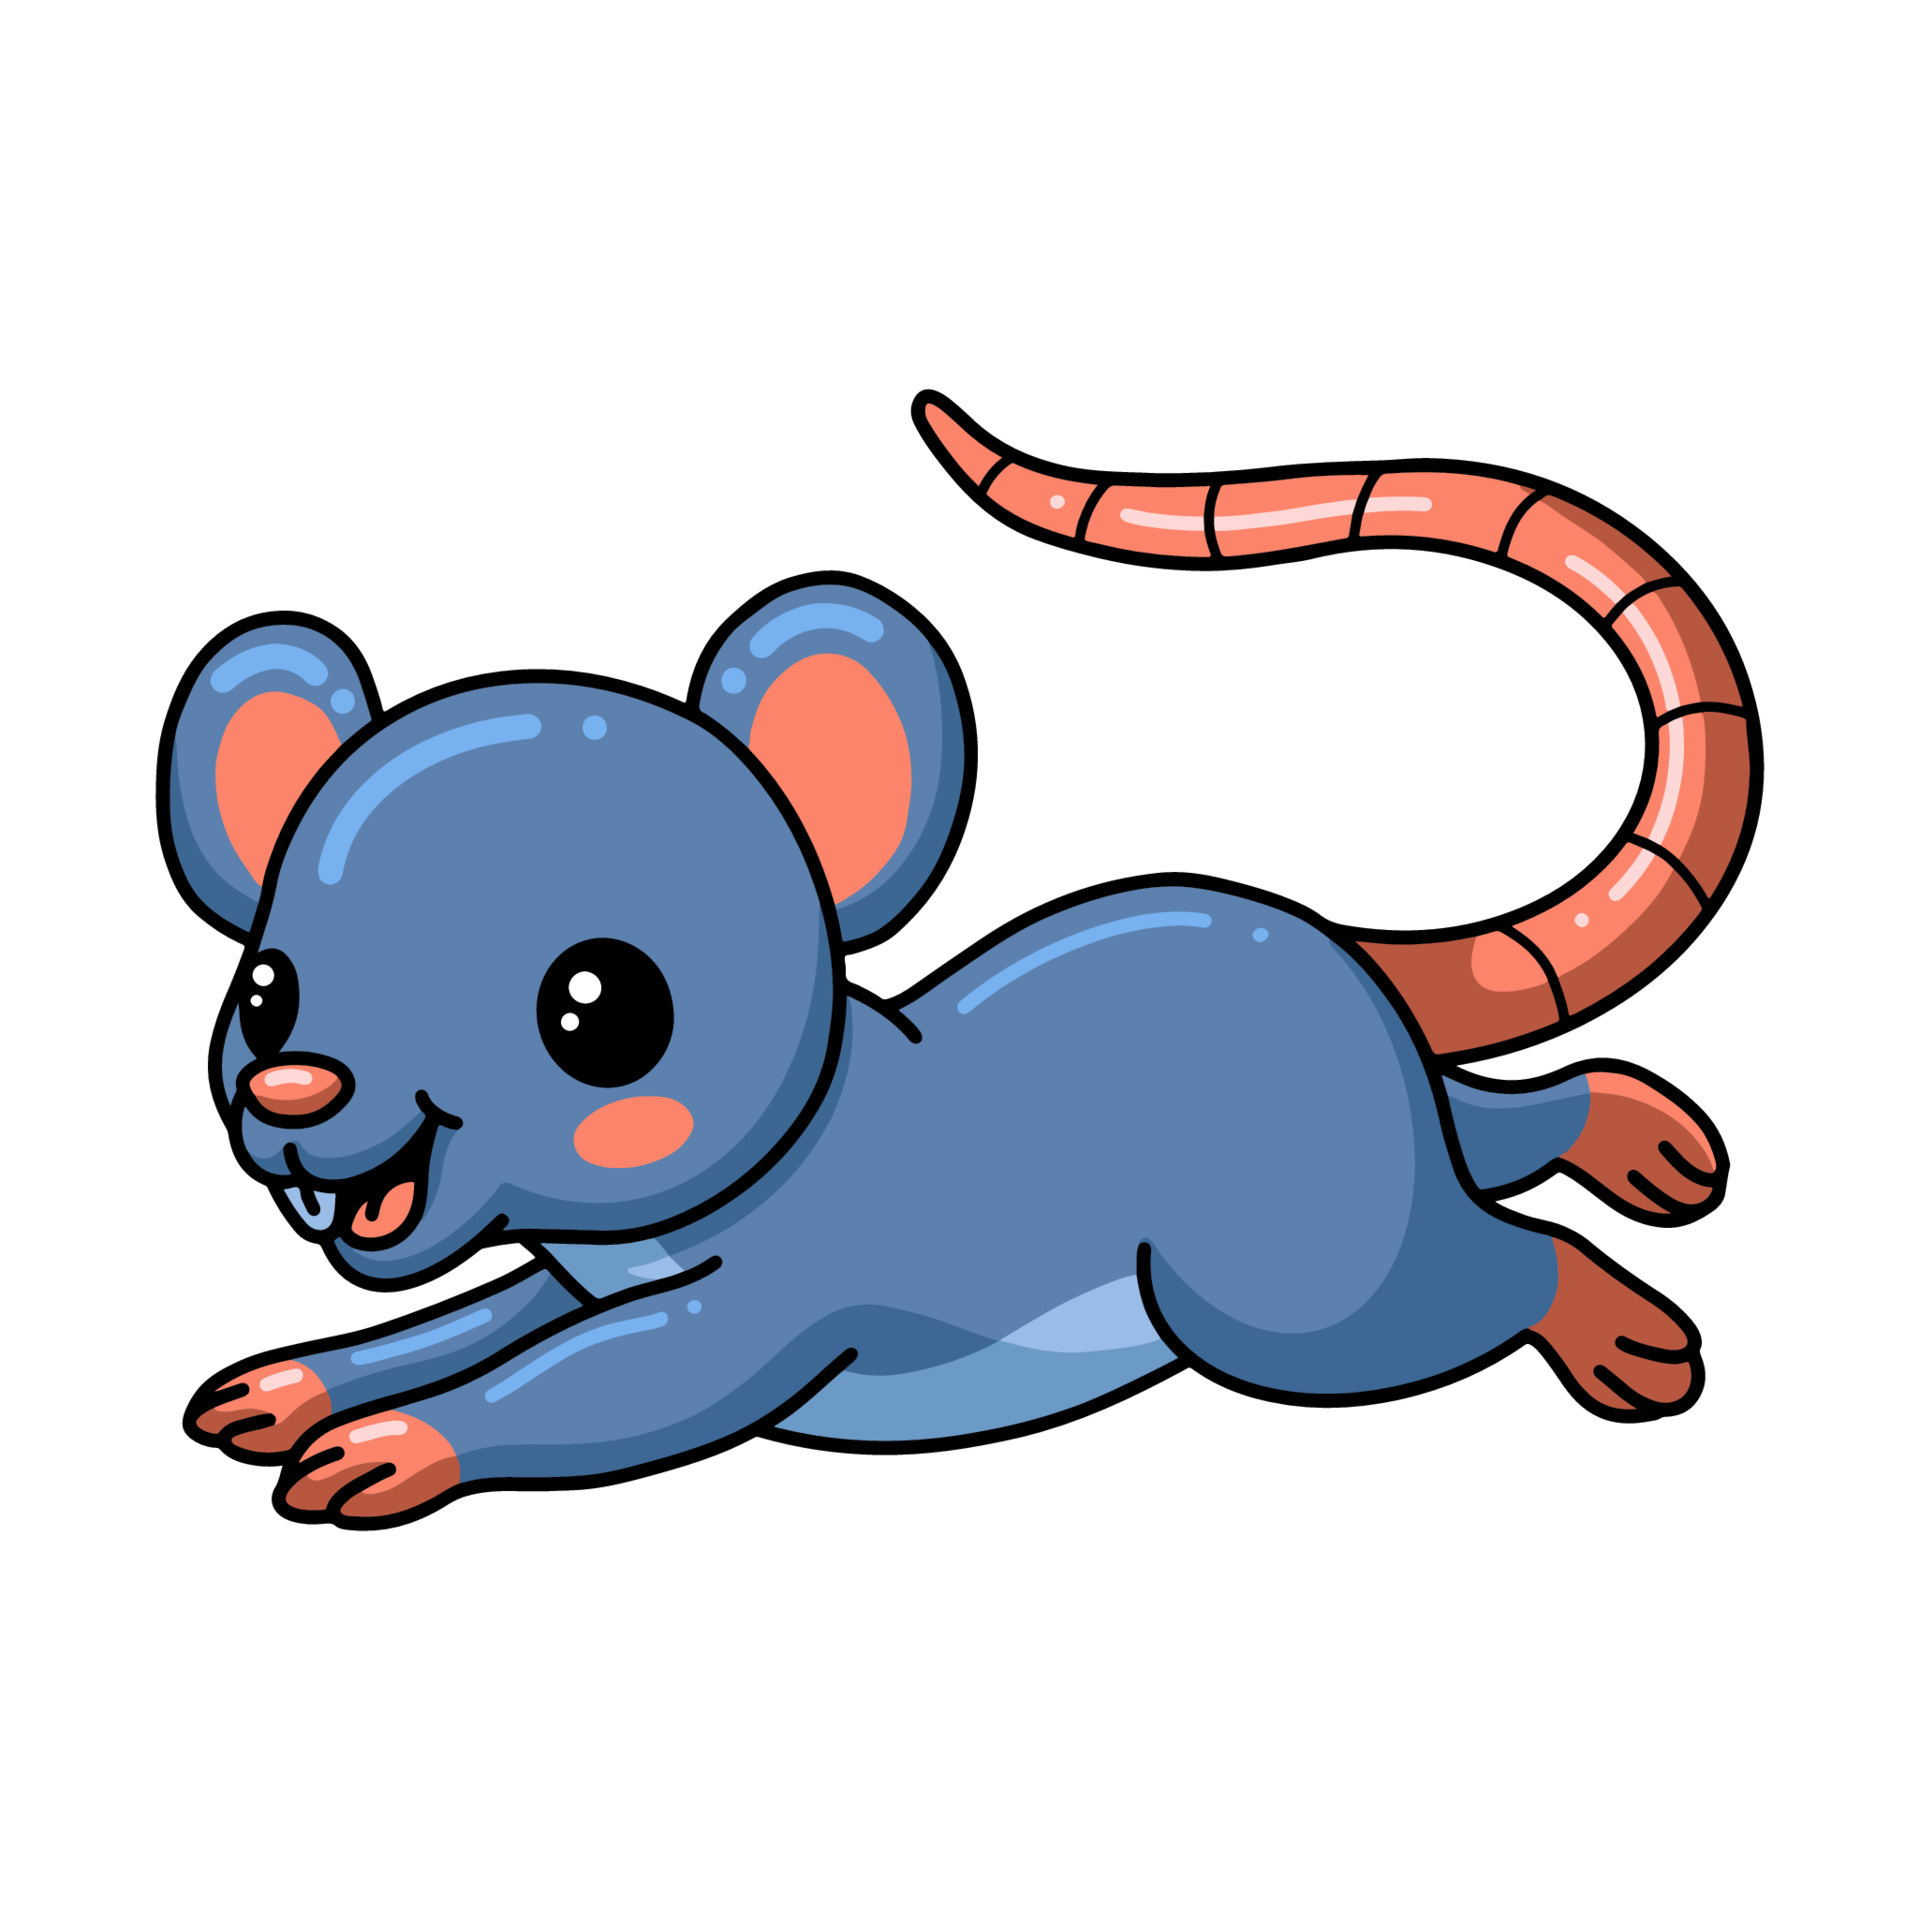 Cute little mouse cartoon jumping 12110613 Vector Art at Vecteezy